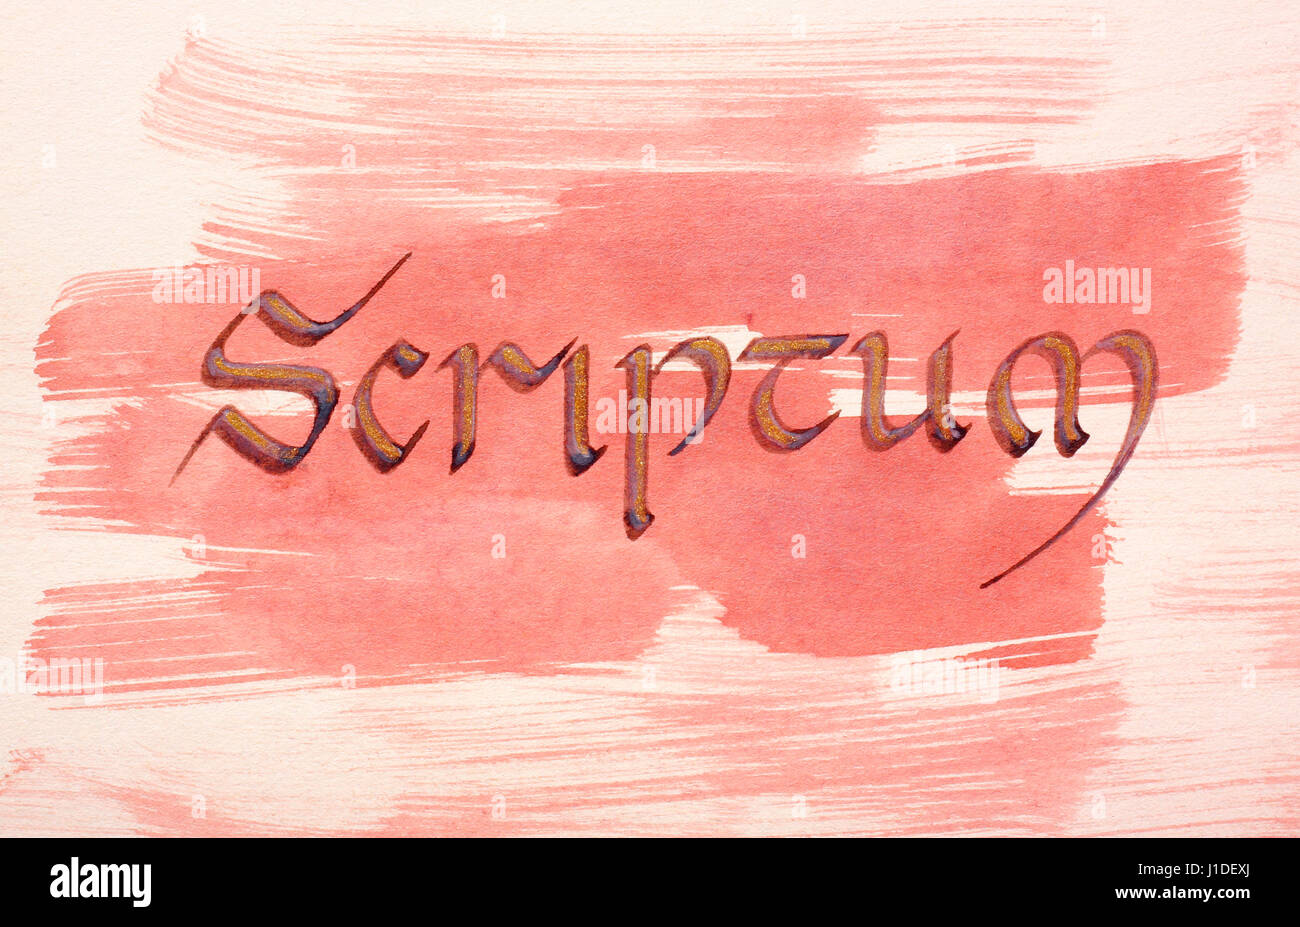 Manoscritti e dipinto di parola scriptum (scrittura, latino medioevale script) sulla carta verniciata Foto Stock